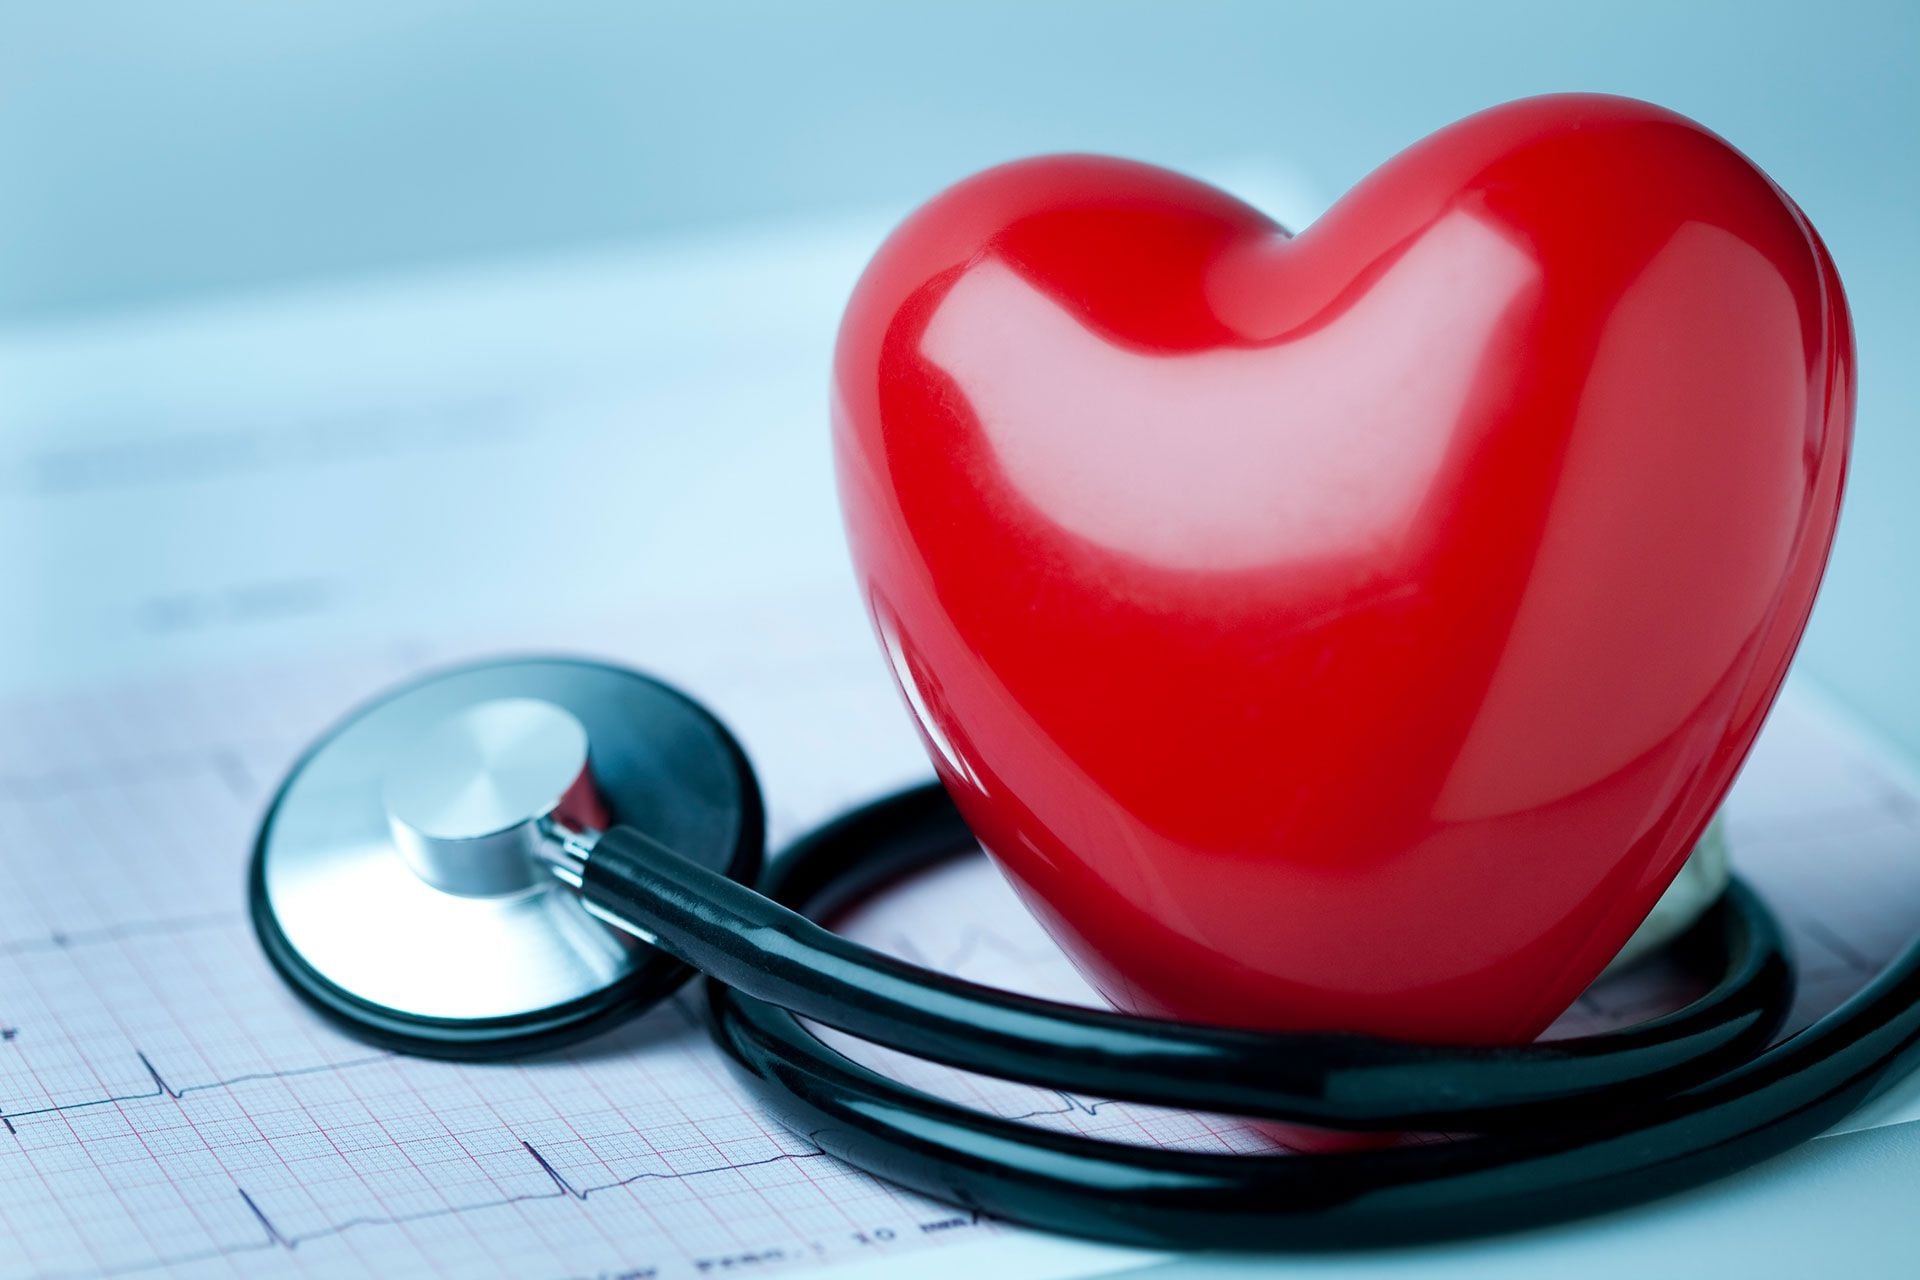 En noviembre de 2012 el Congreso de la Nación sancionó la Ley 26835 que incluye el aprendizaje de técnicas de Reanimación Cardiopulmonar (RCP) en los colegios secundarios